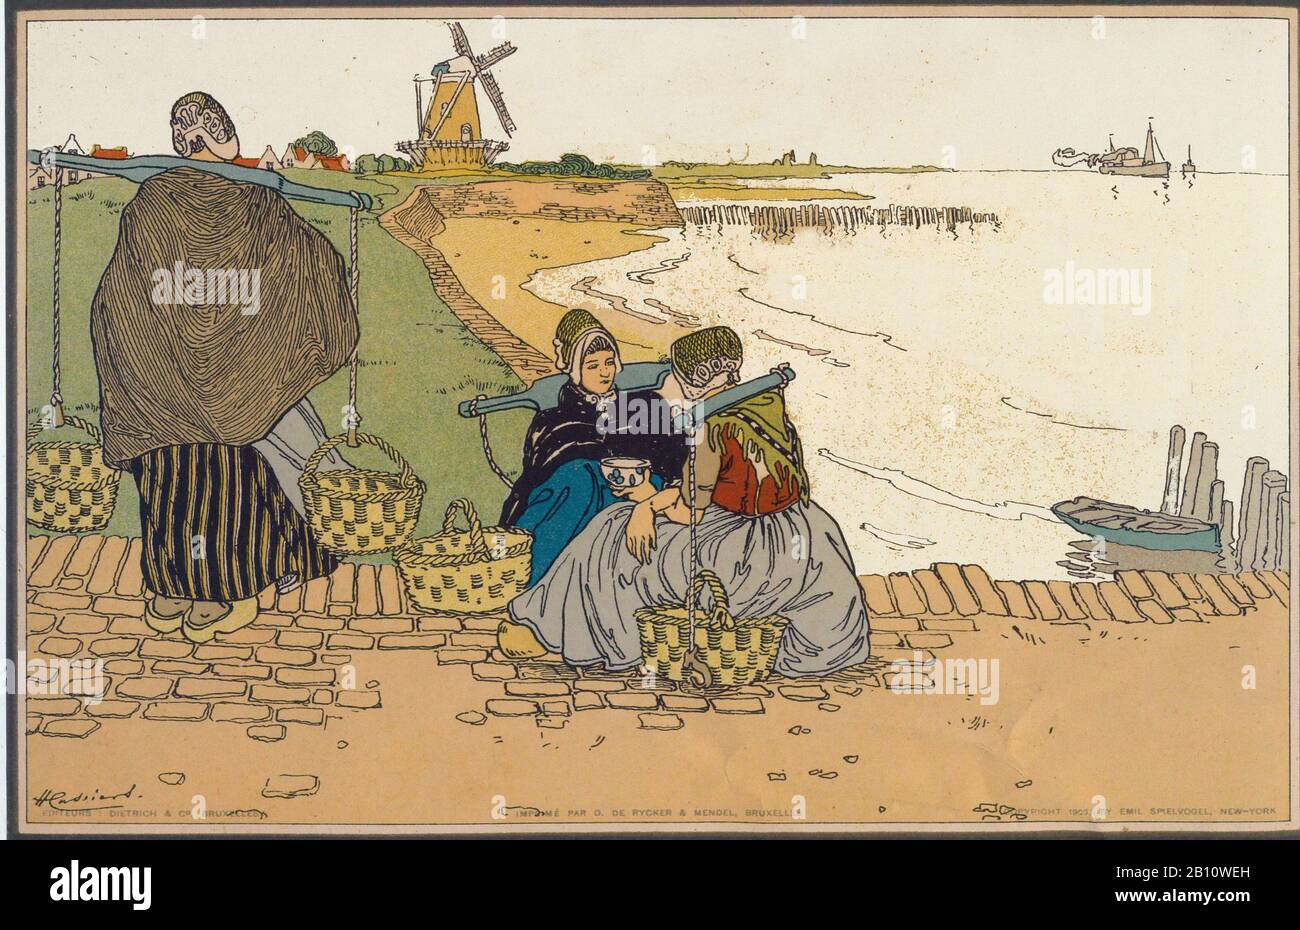 Prent cassiers 1903 - Illustrazione di Henri Cassiers (1858 - 1944) Foto Stock